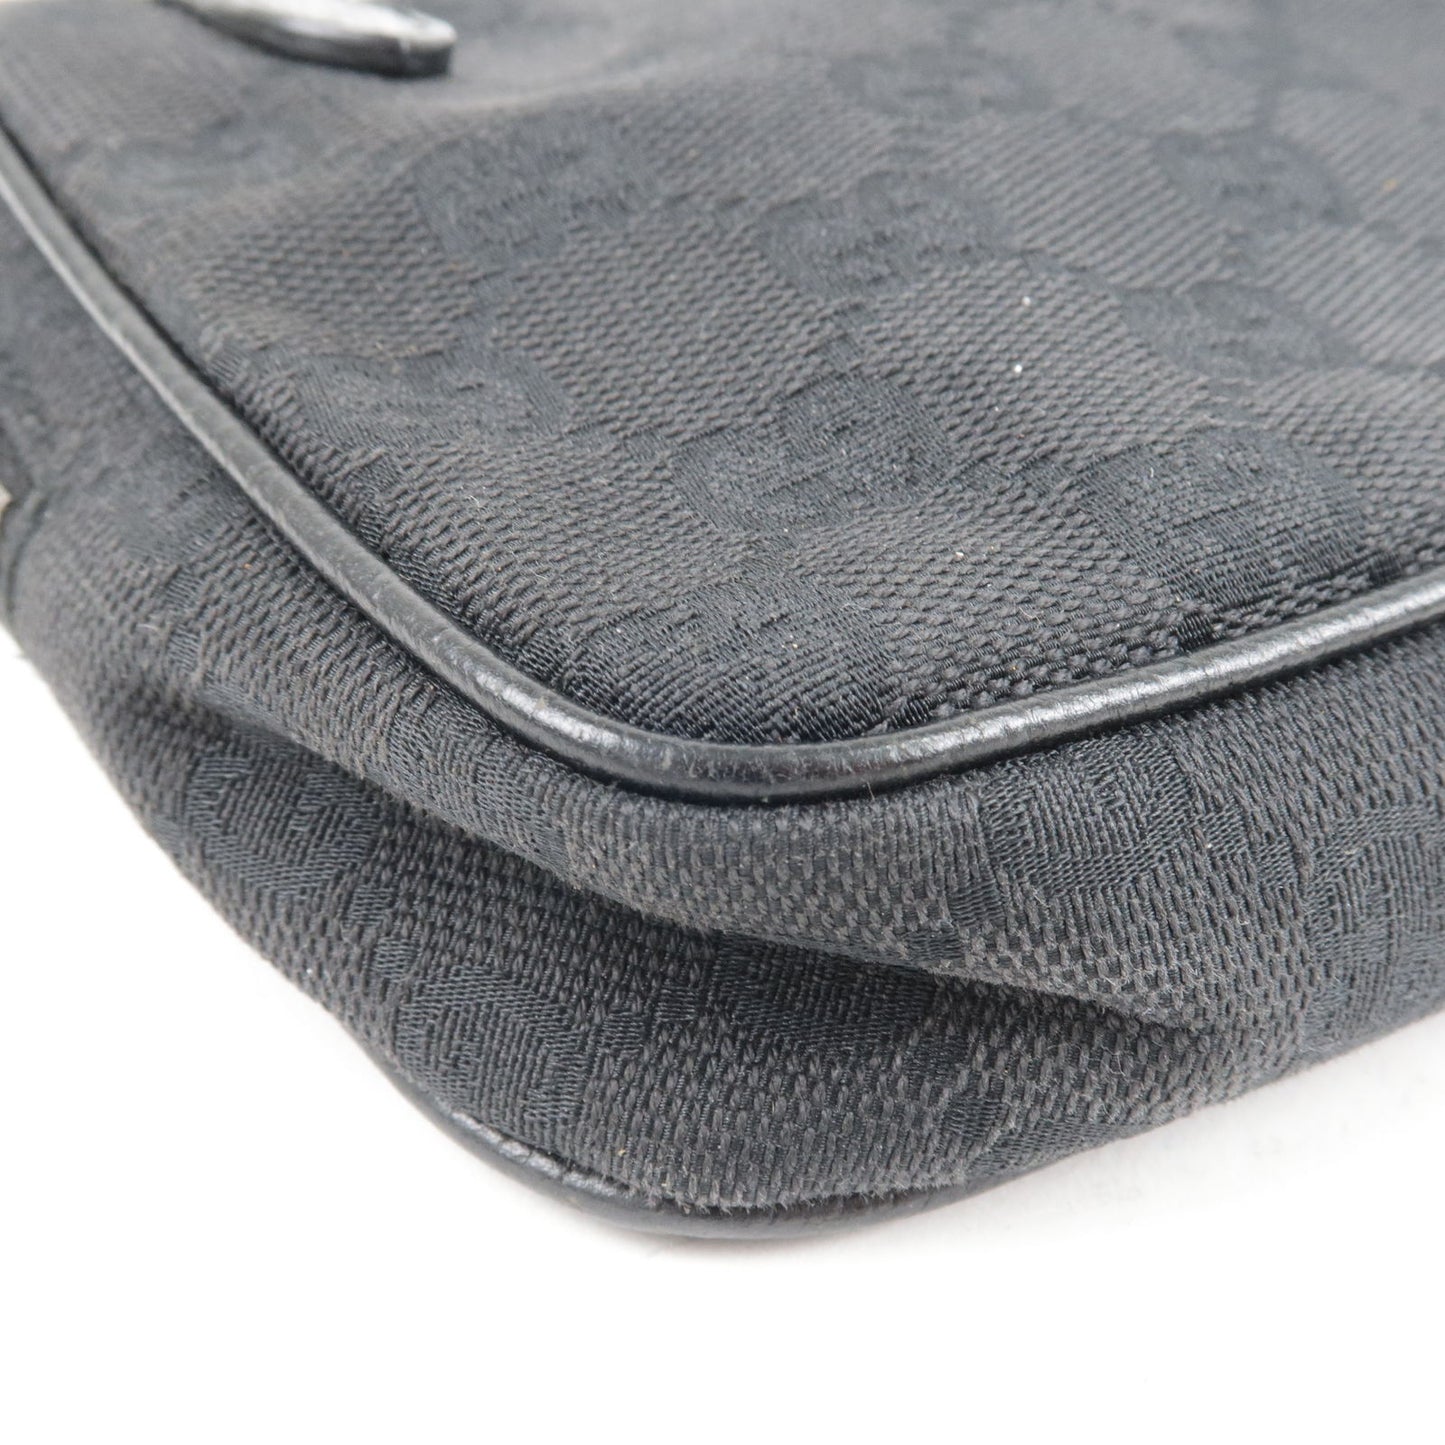 GUCCI GG Canvas Leather Shoulder Bag Pouch Black 120975